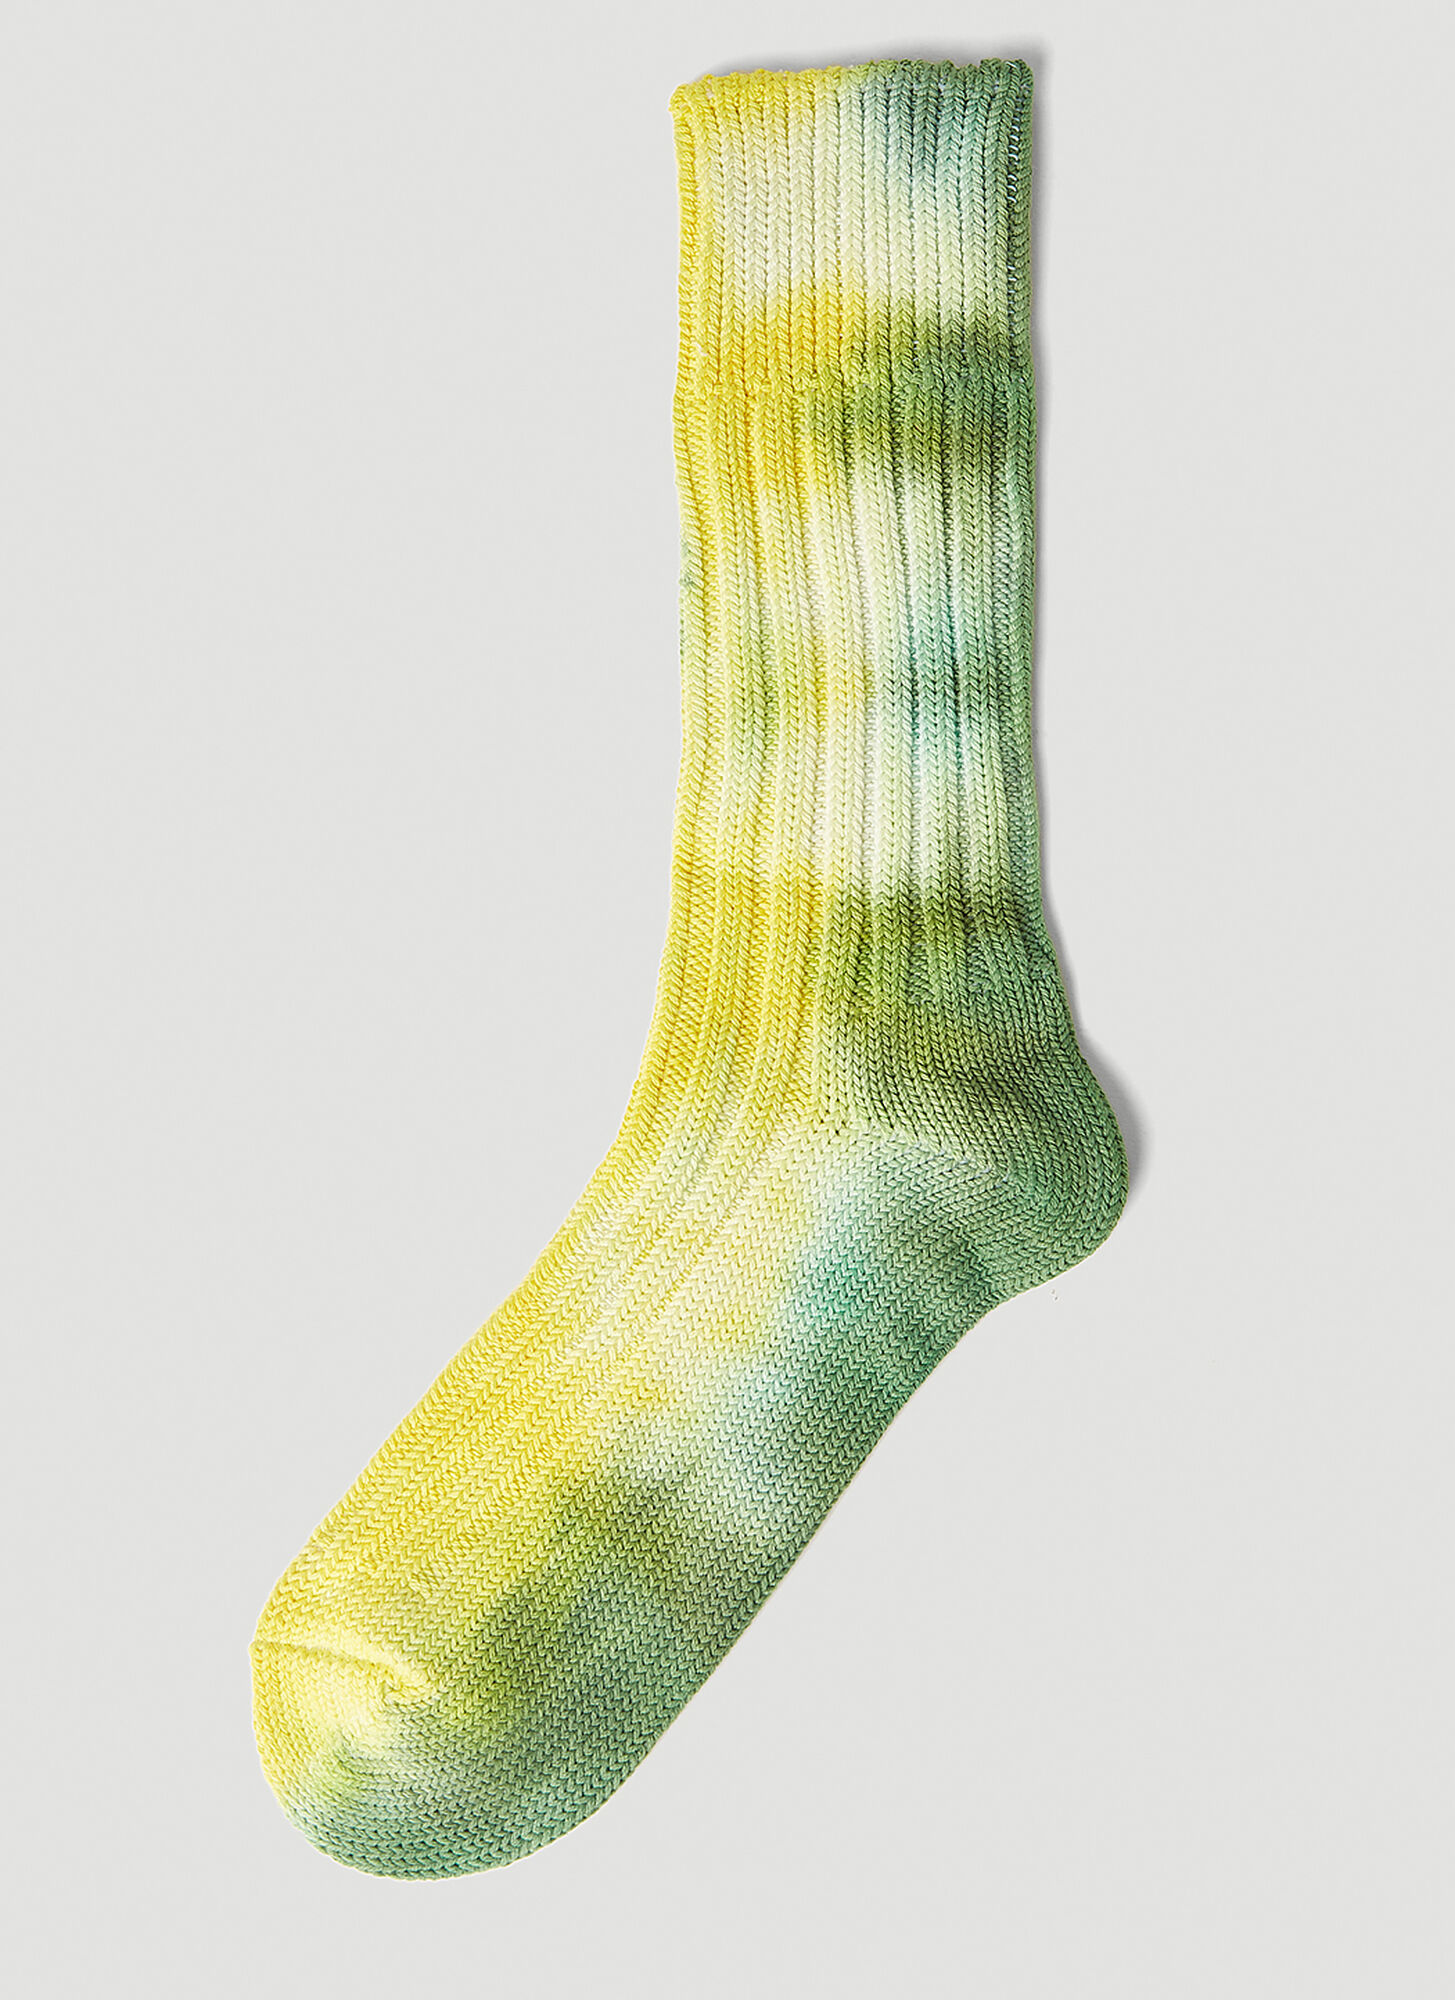 Stain Shade X Decka Socks Tie Dye Socks In Green